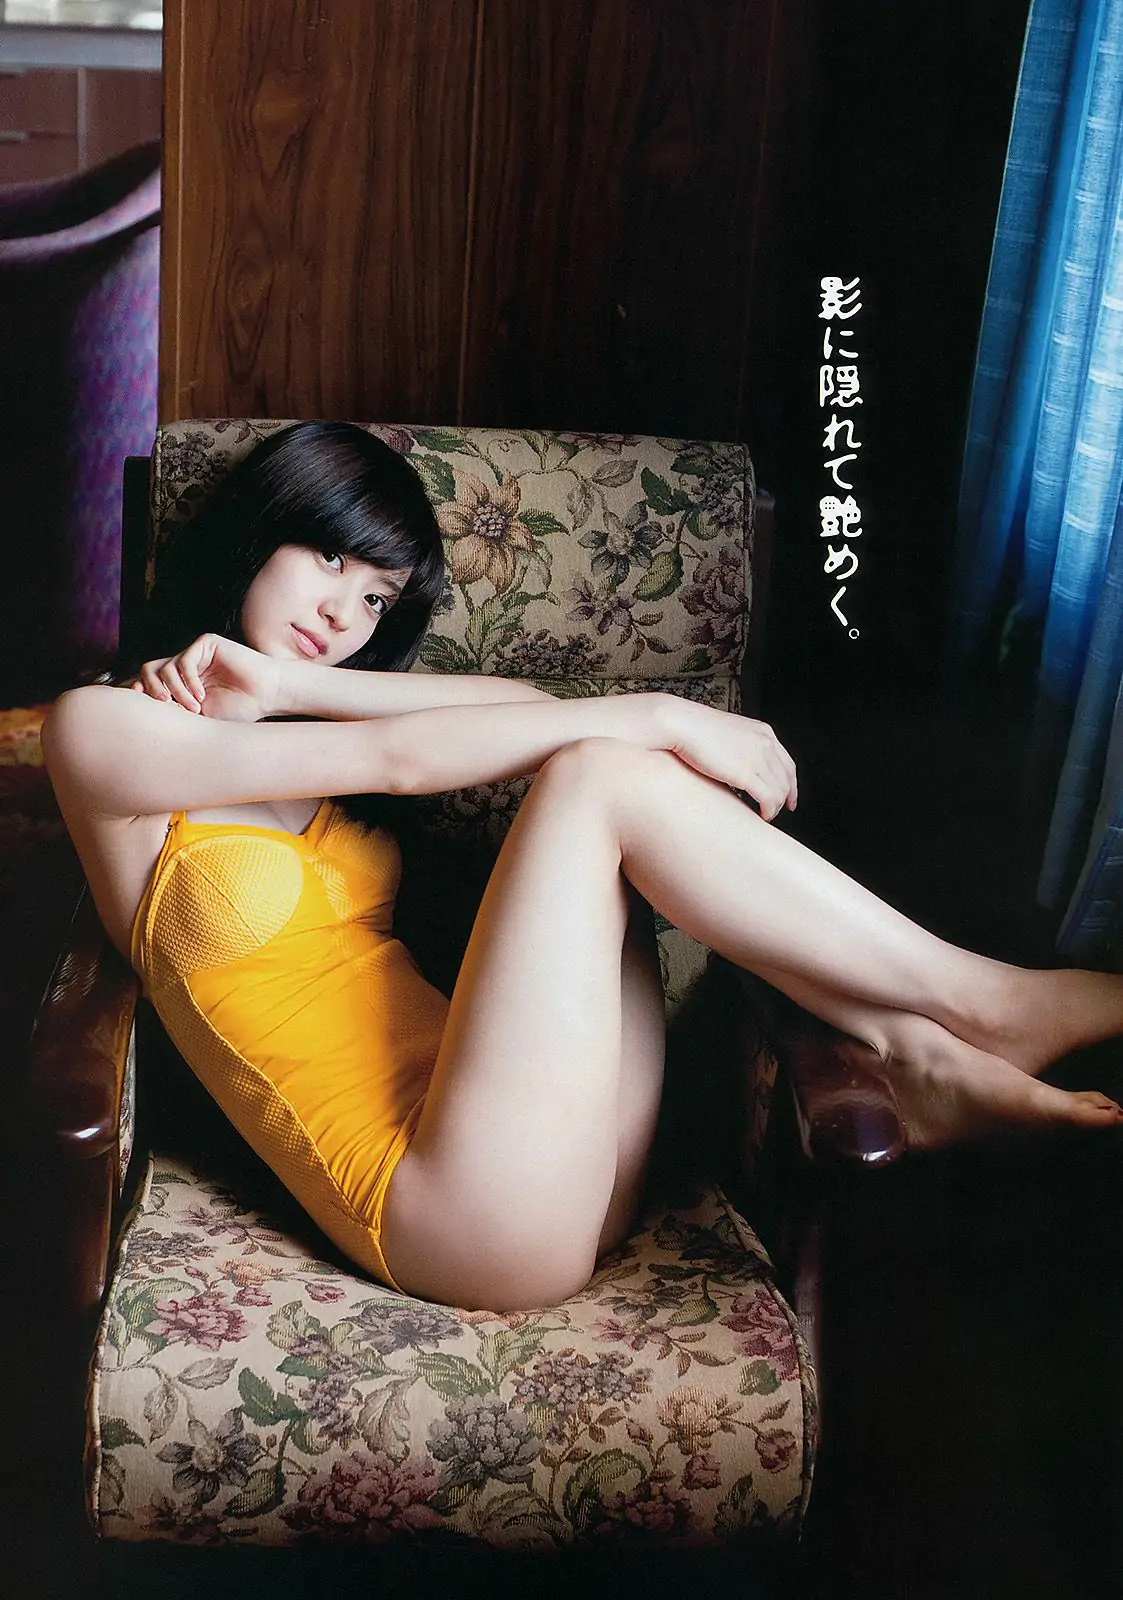 逢沢りな 中村静香 藤原令子 光宗薫 [Weekly Playboy] 2012年No.17 写真杂志